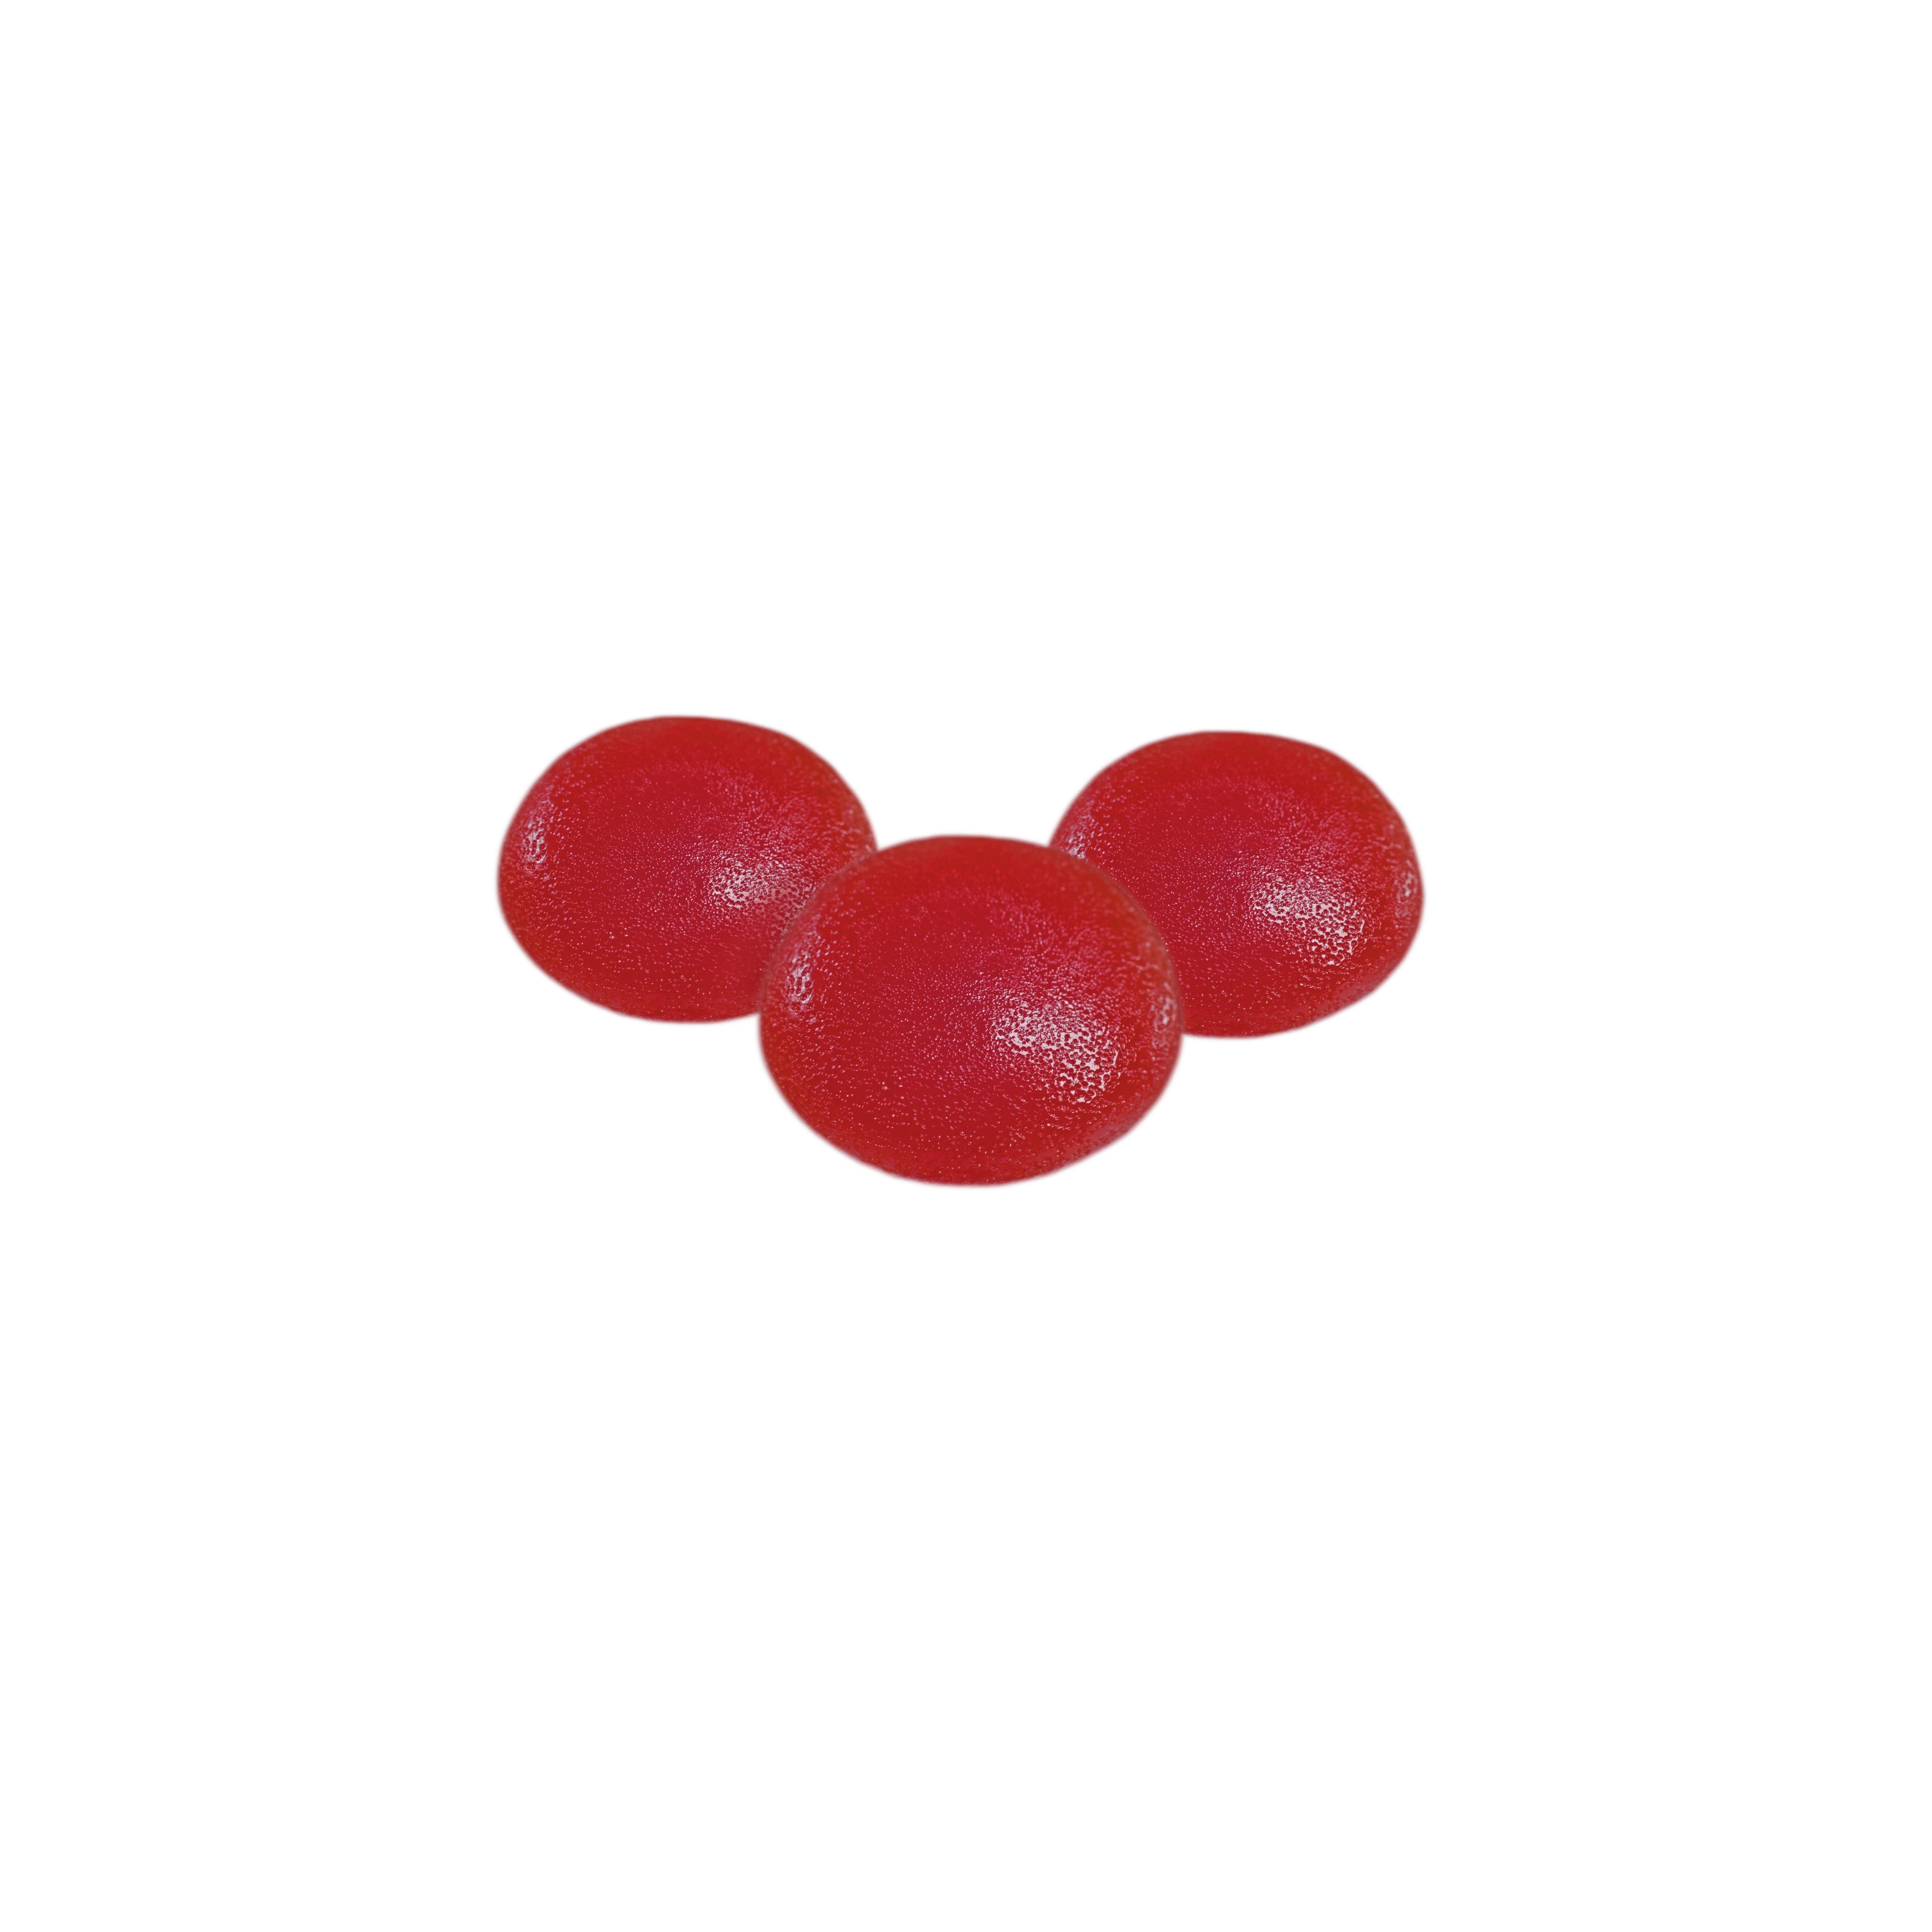 Fruit Drops - CBD Rapsberry 5 Pack